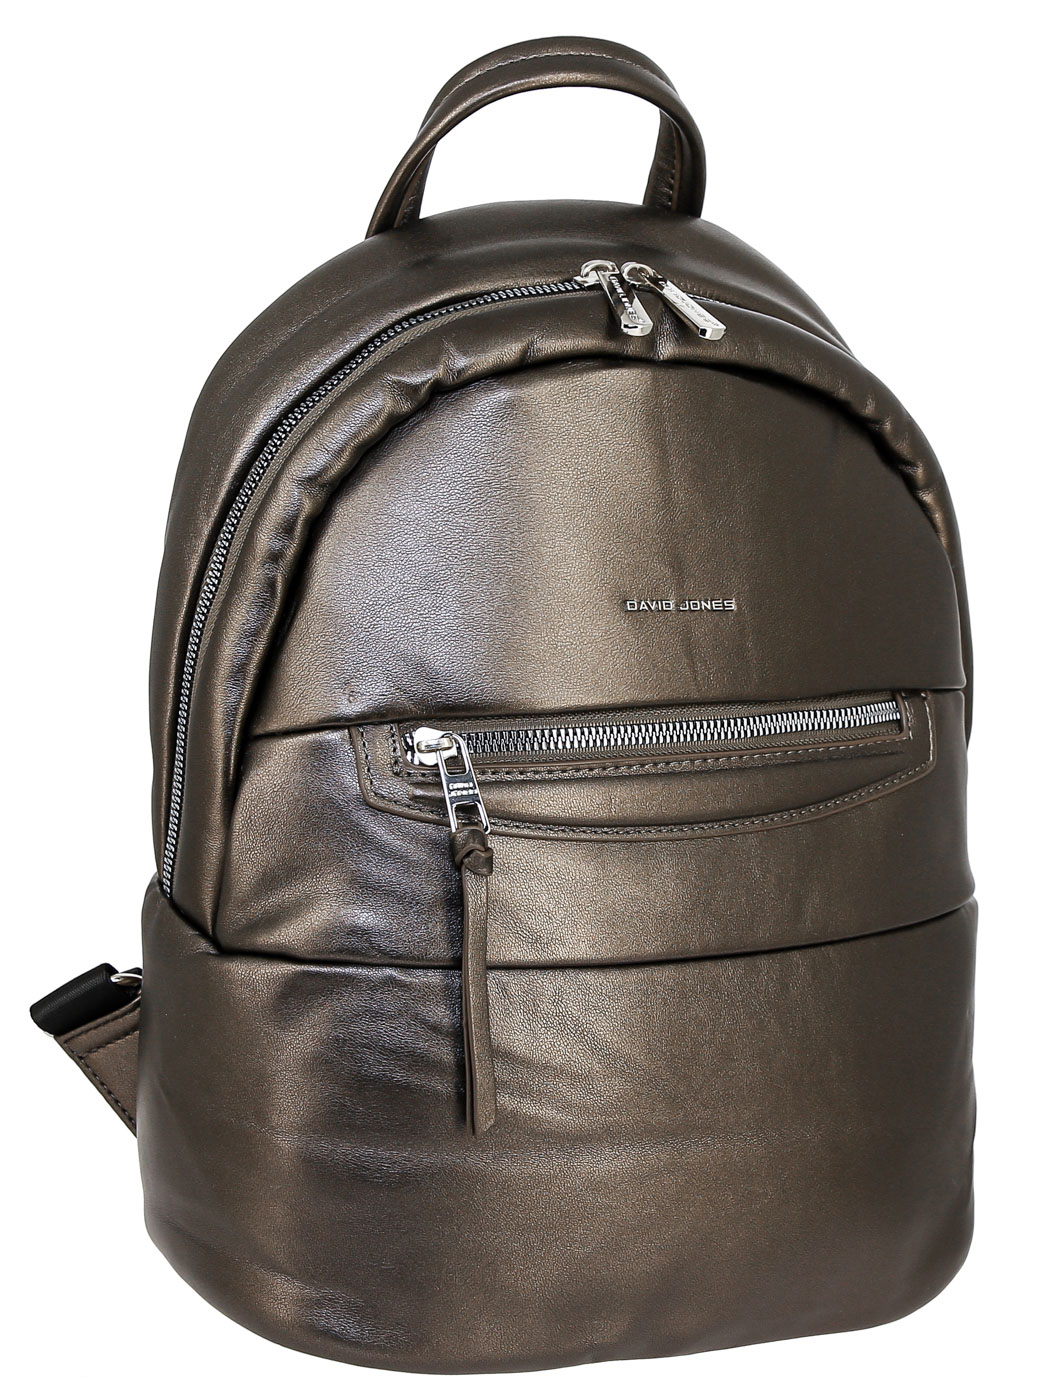 Рюкзак женский David Jones 68612DD серебристо-бронзовый, 34х28х14 см